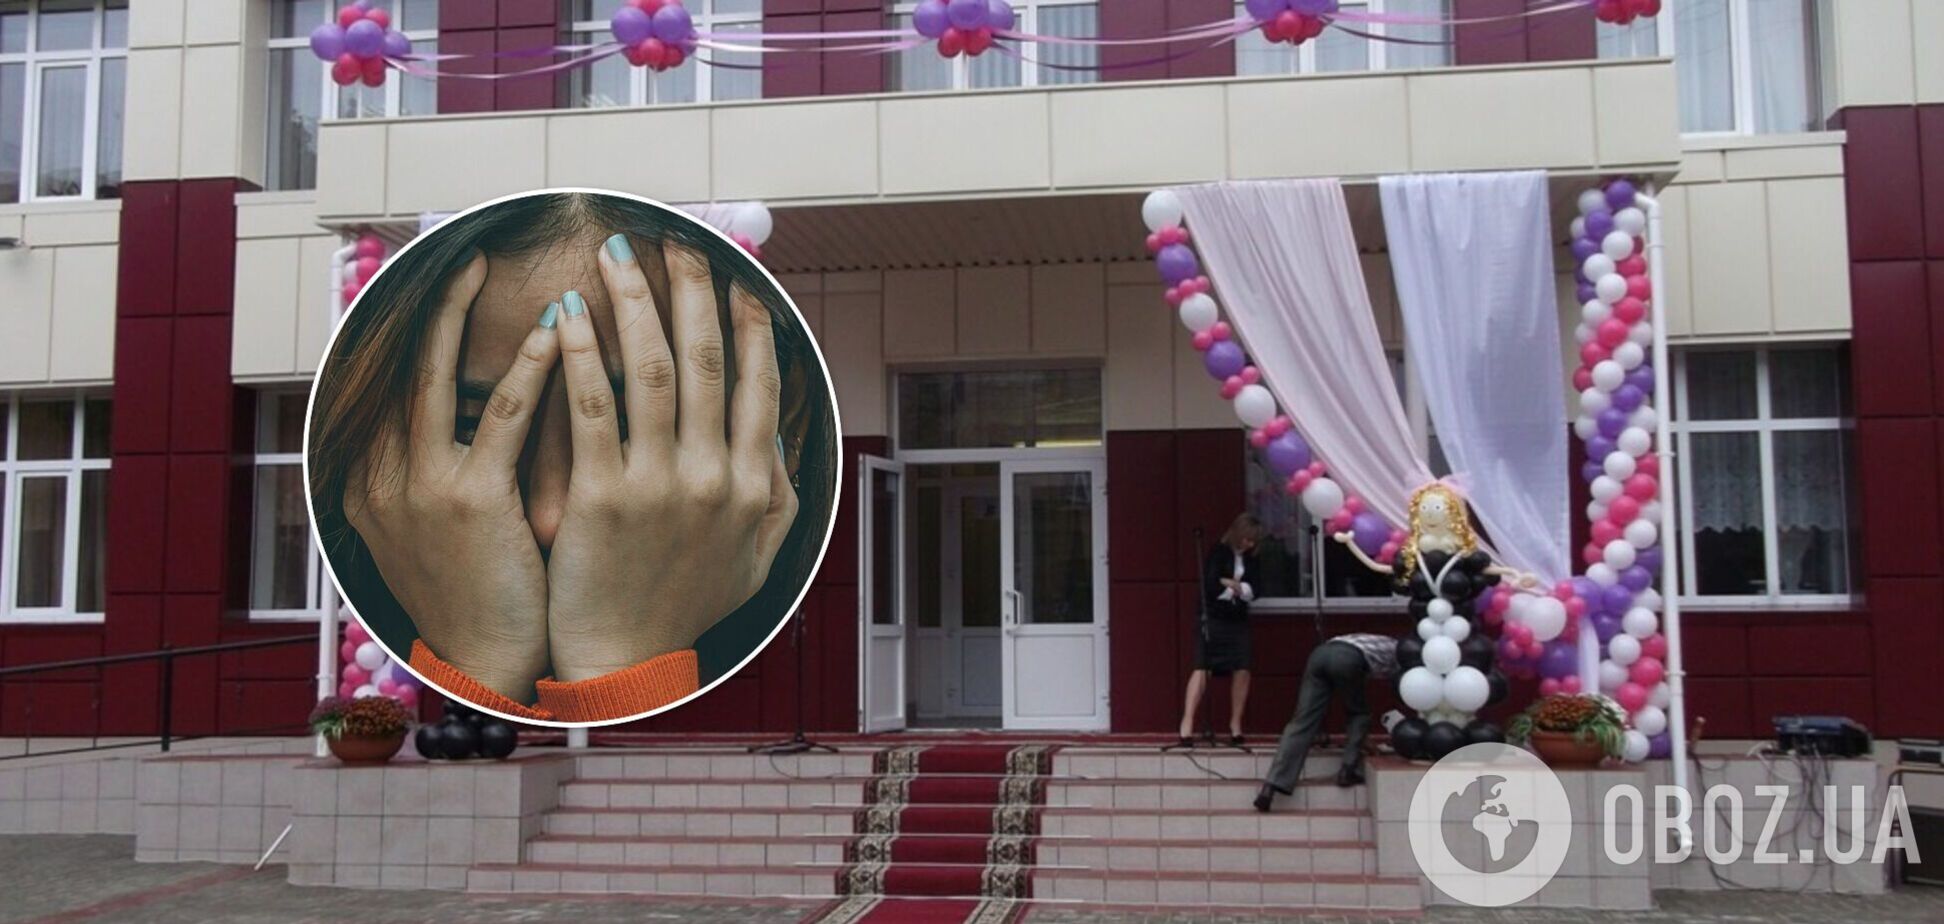 На Дніпропетровщині вчитель зґвалтував дівчину на випускному: в поліції запропонували їм зіграти весілля